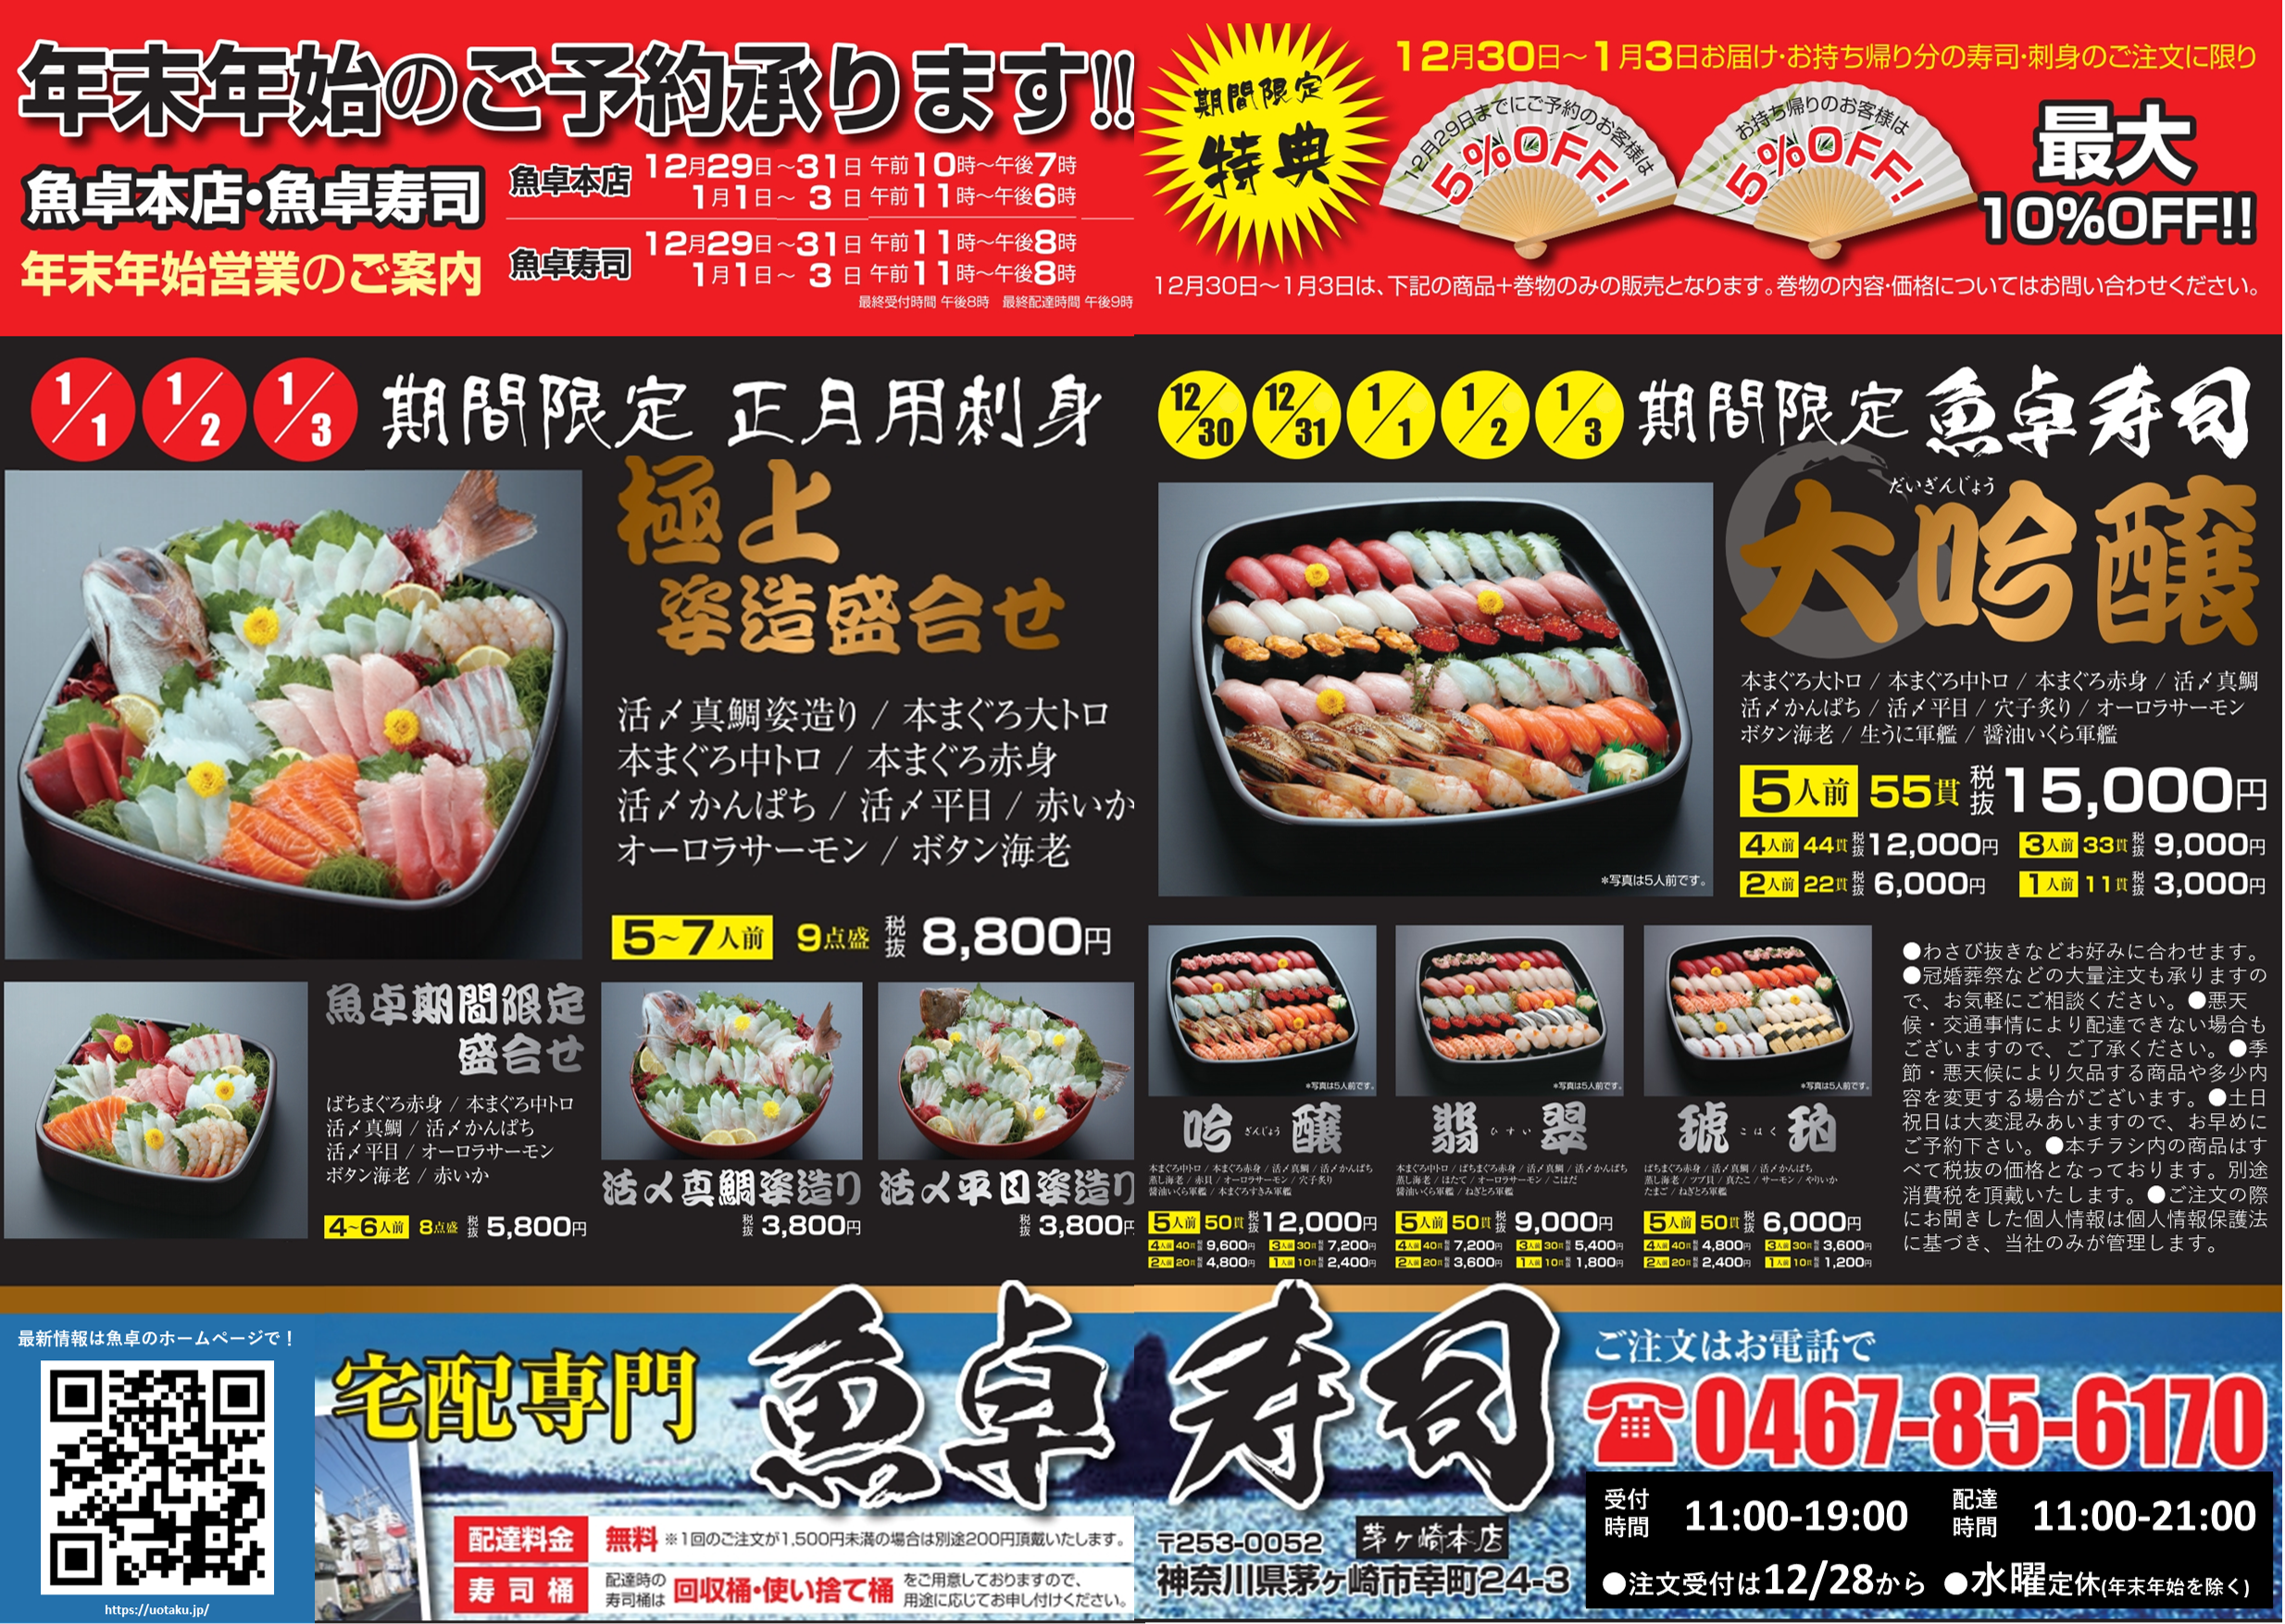 【魚卓】年末年始のお寿司 & 正月のお刺身ご予約チラシ